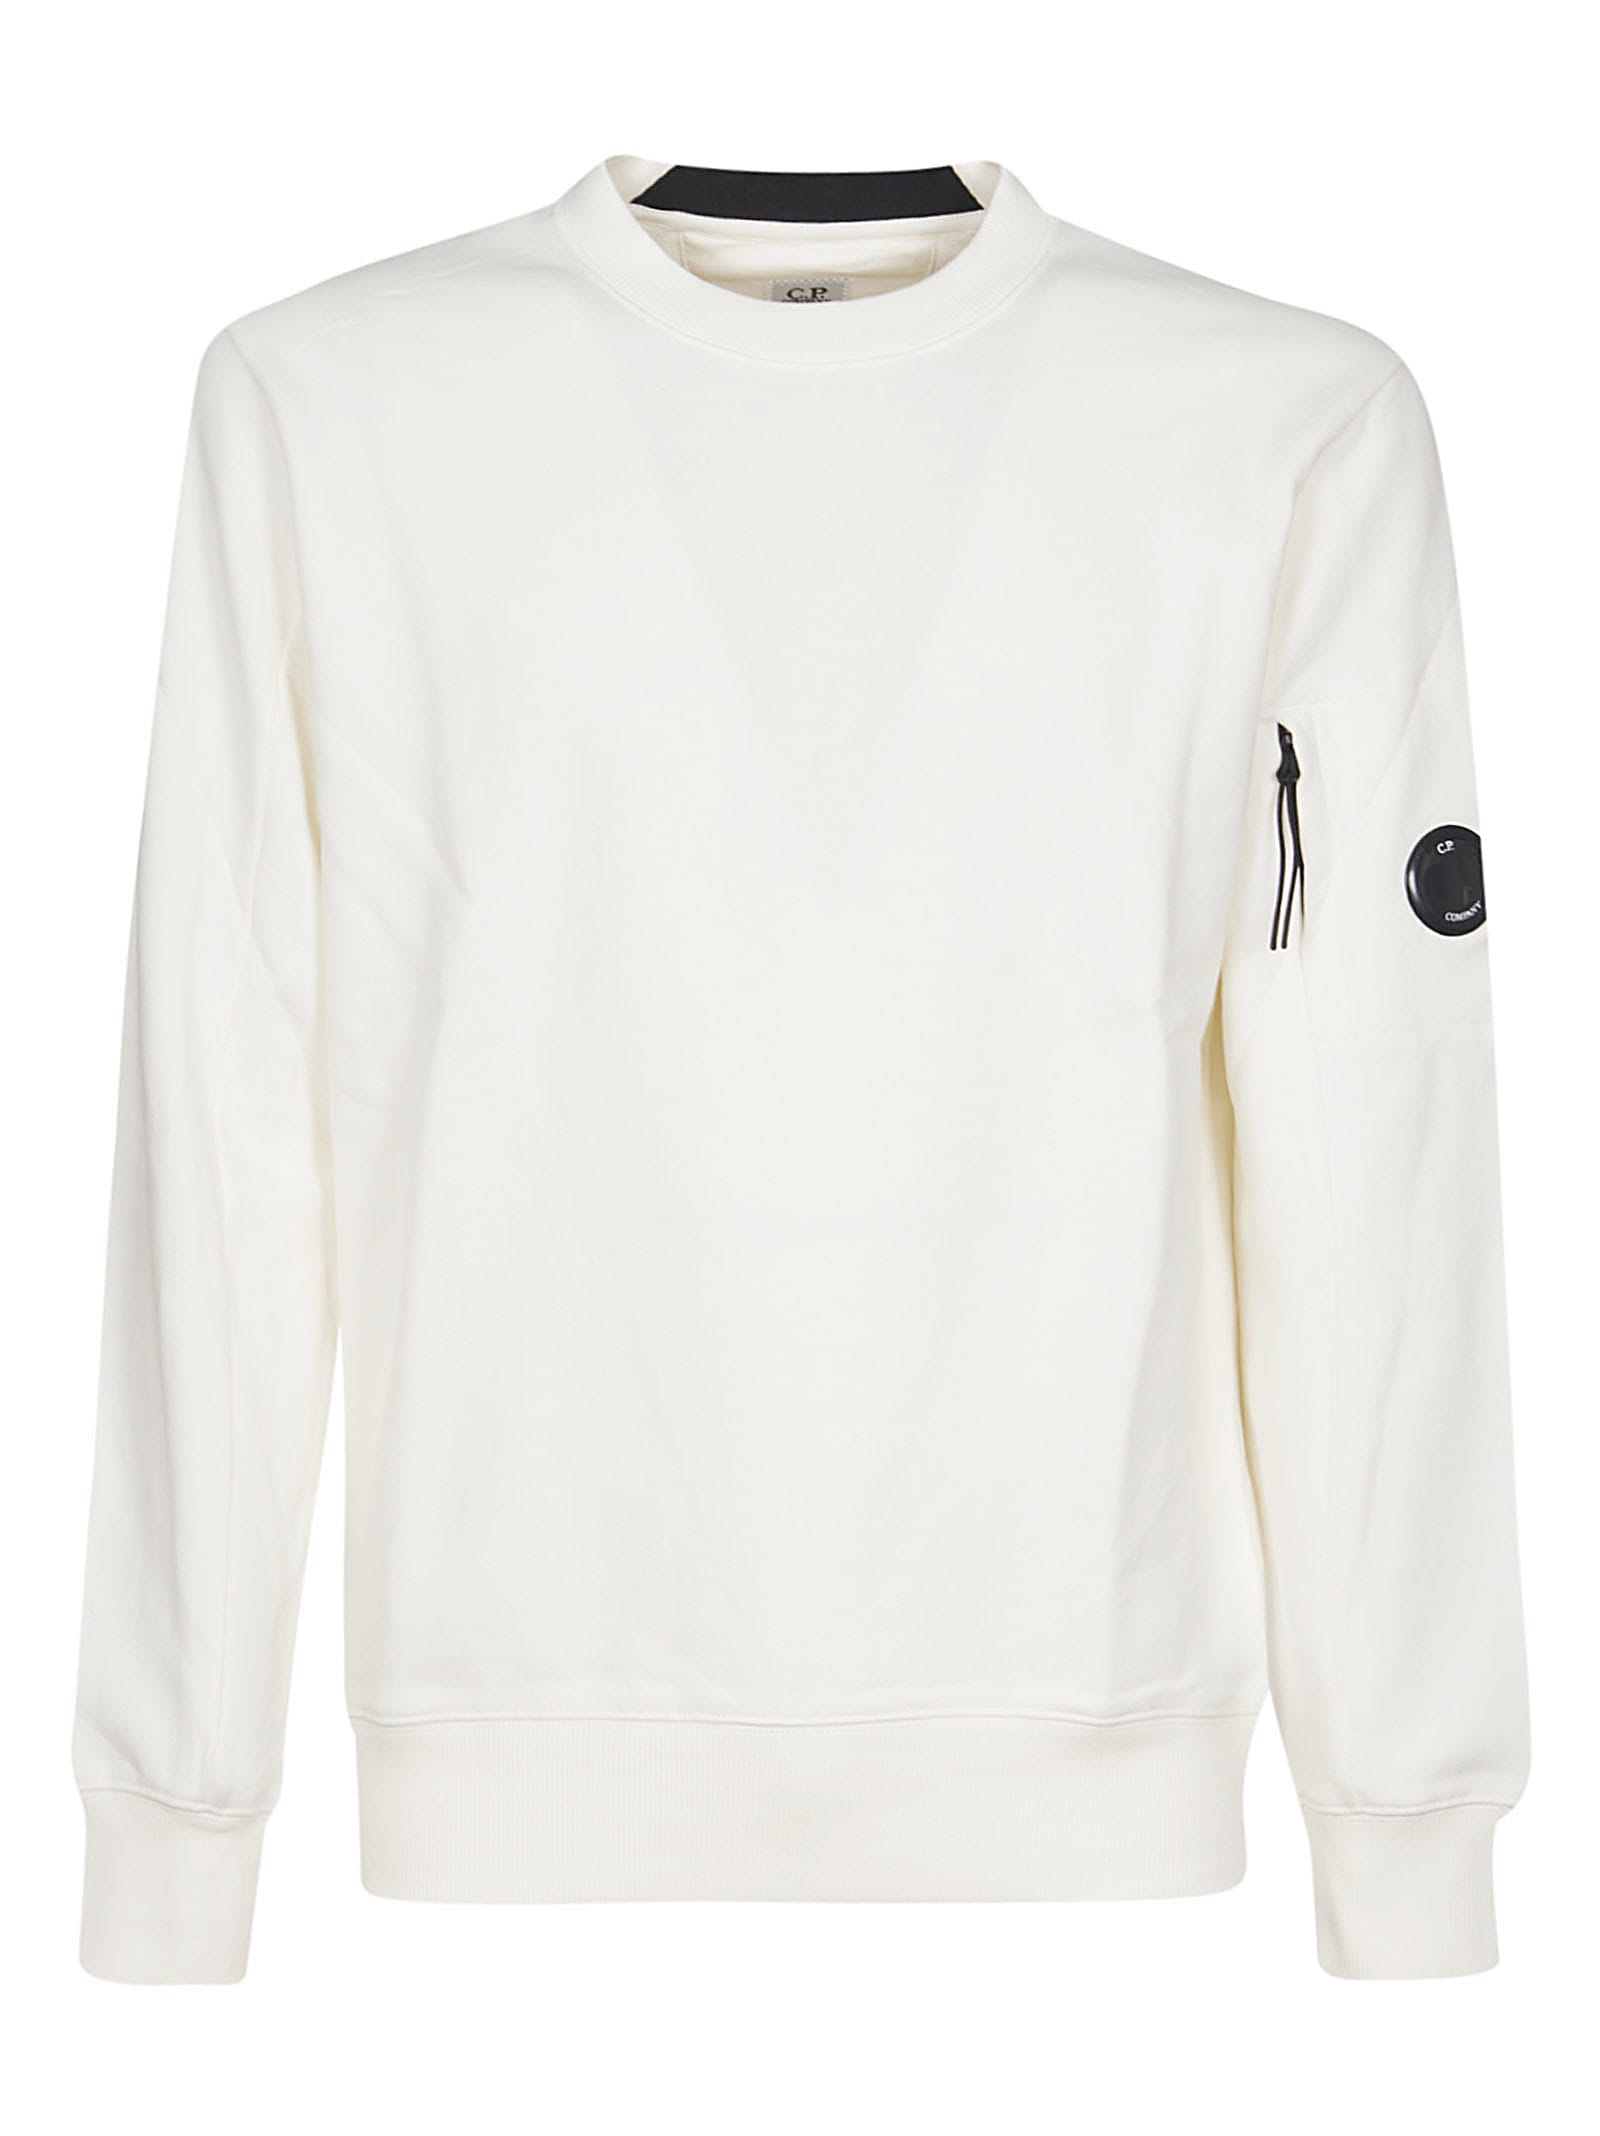 white cp sweatshirt